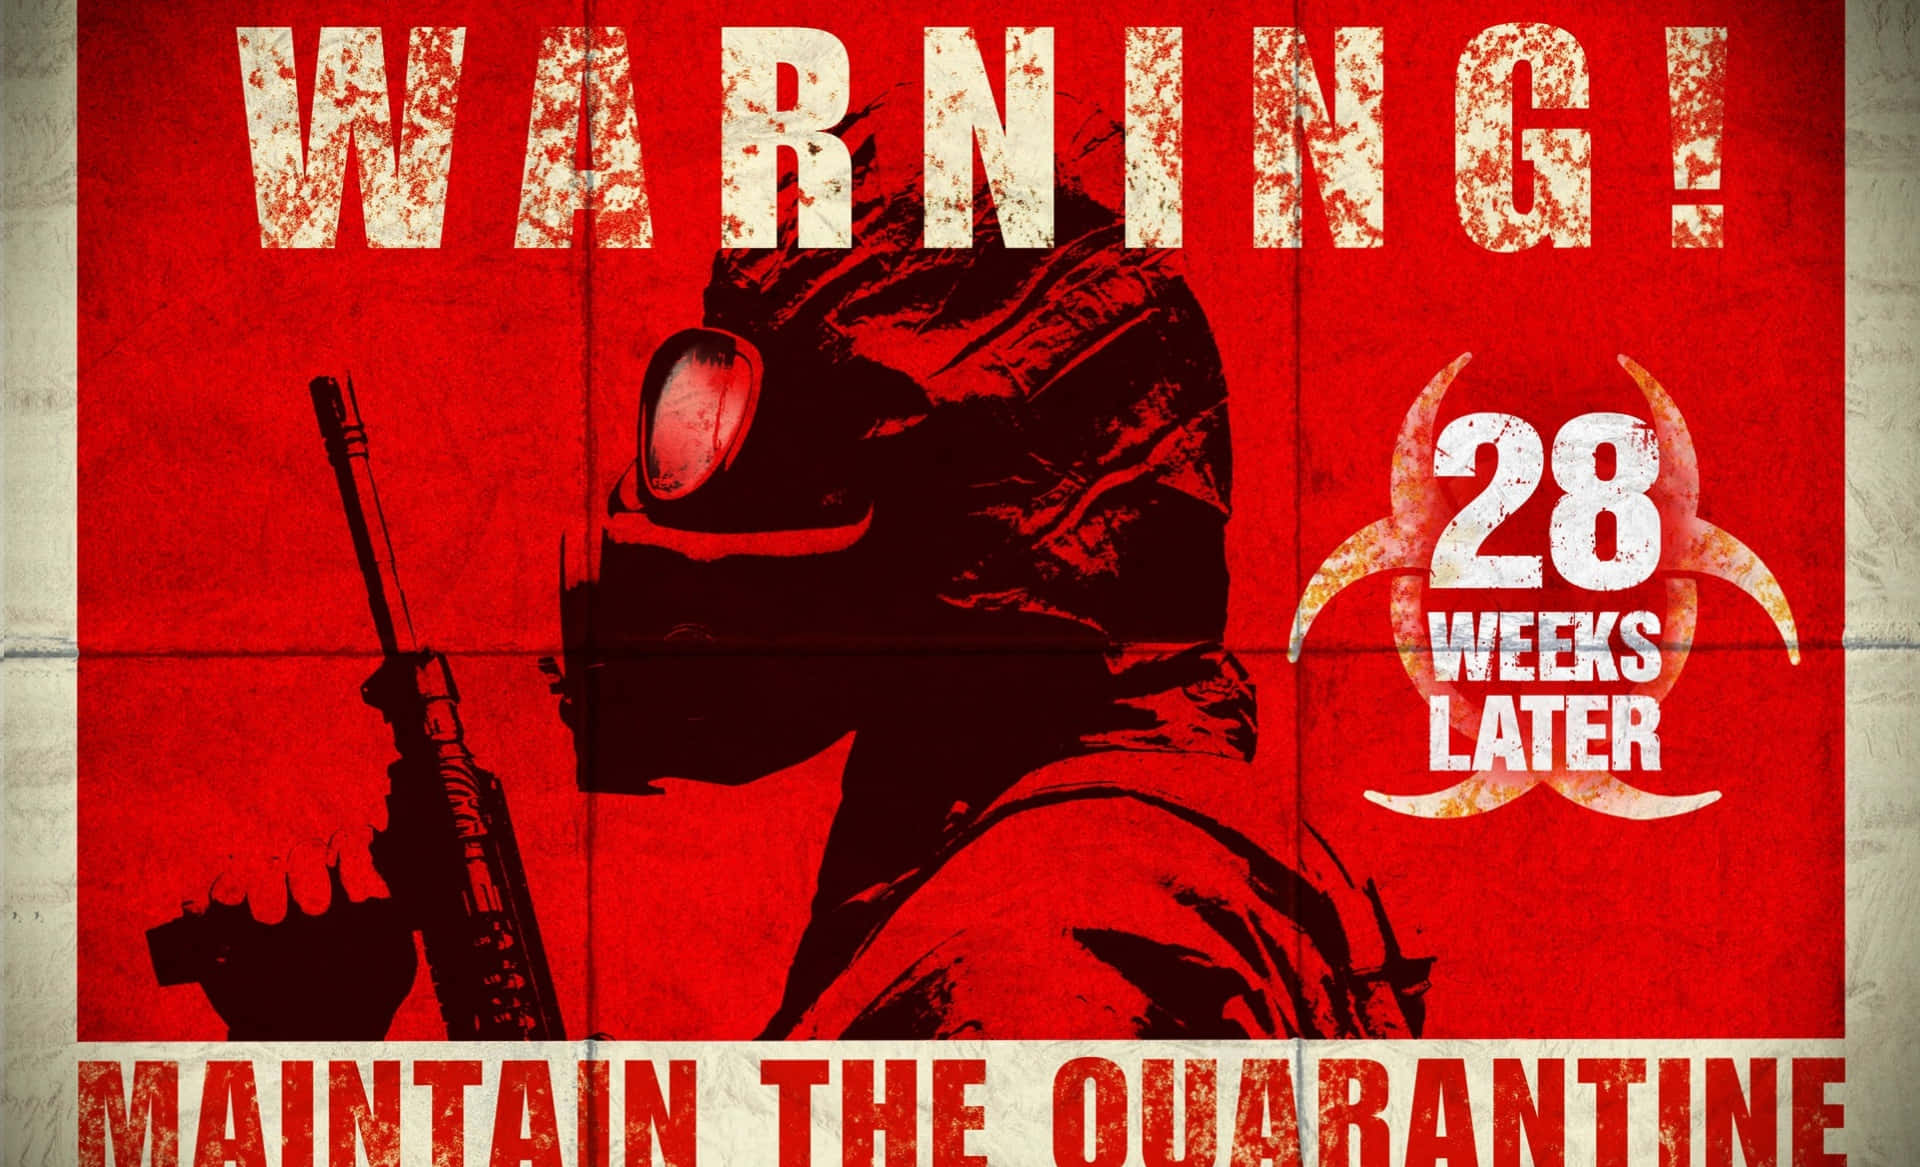 Covidquarantine Warning: Covid-karantänvarning. Wallpaper